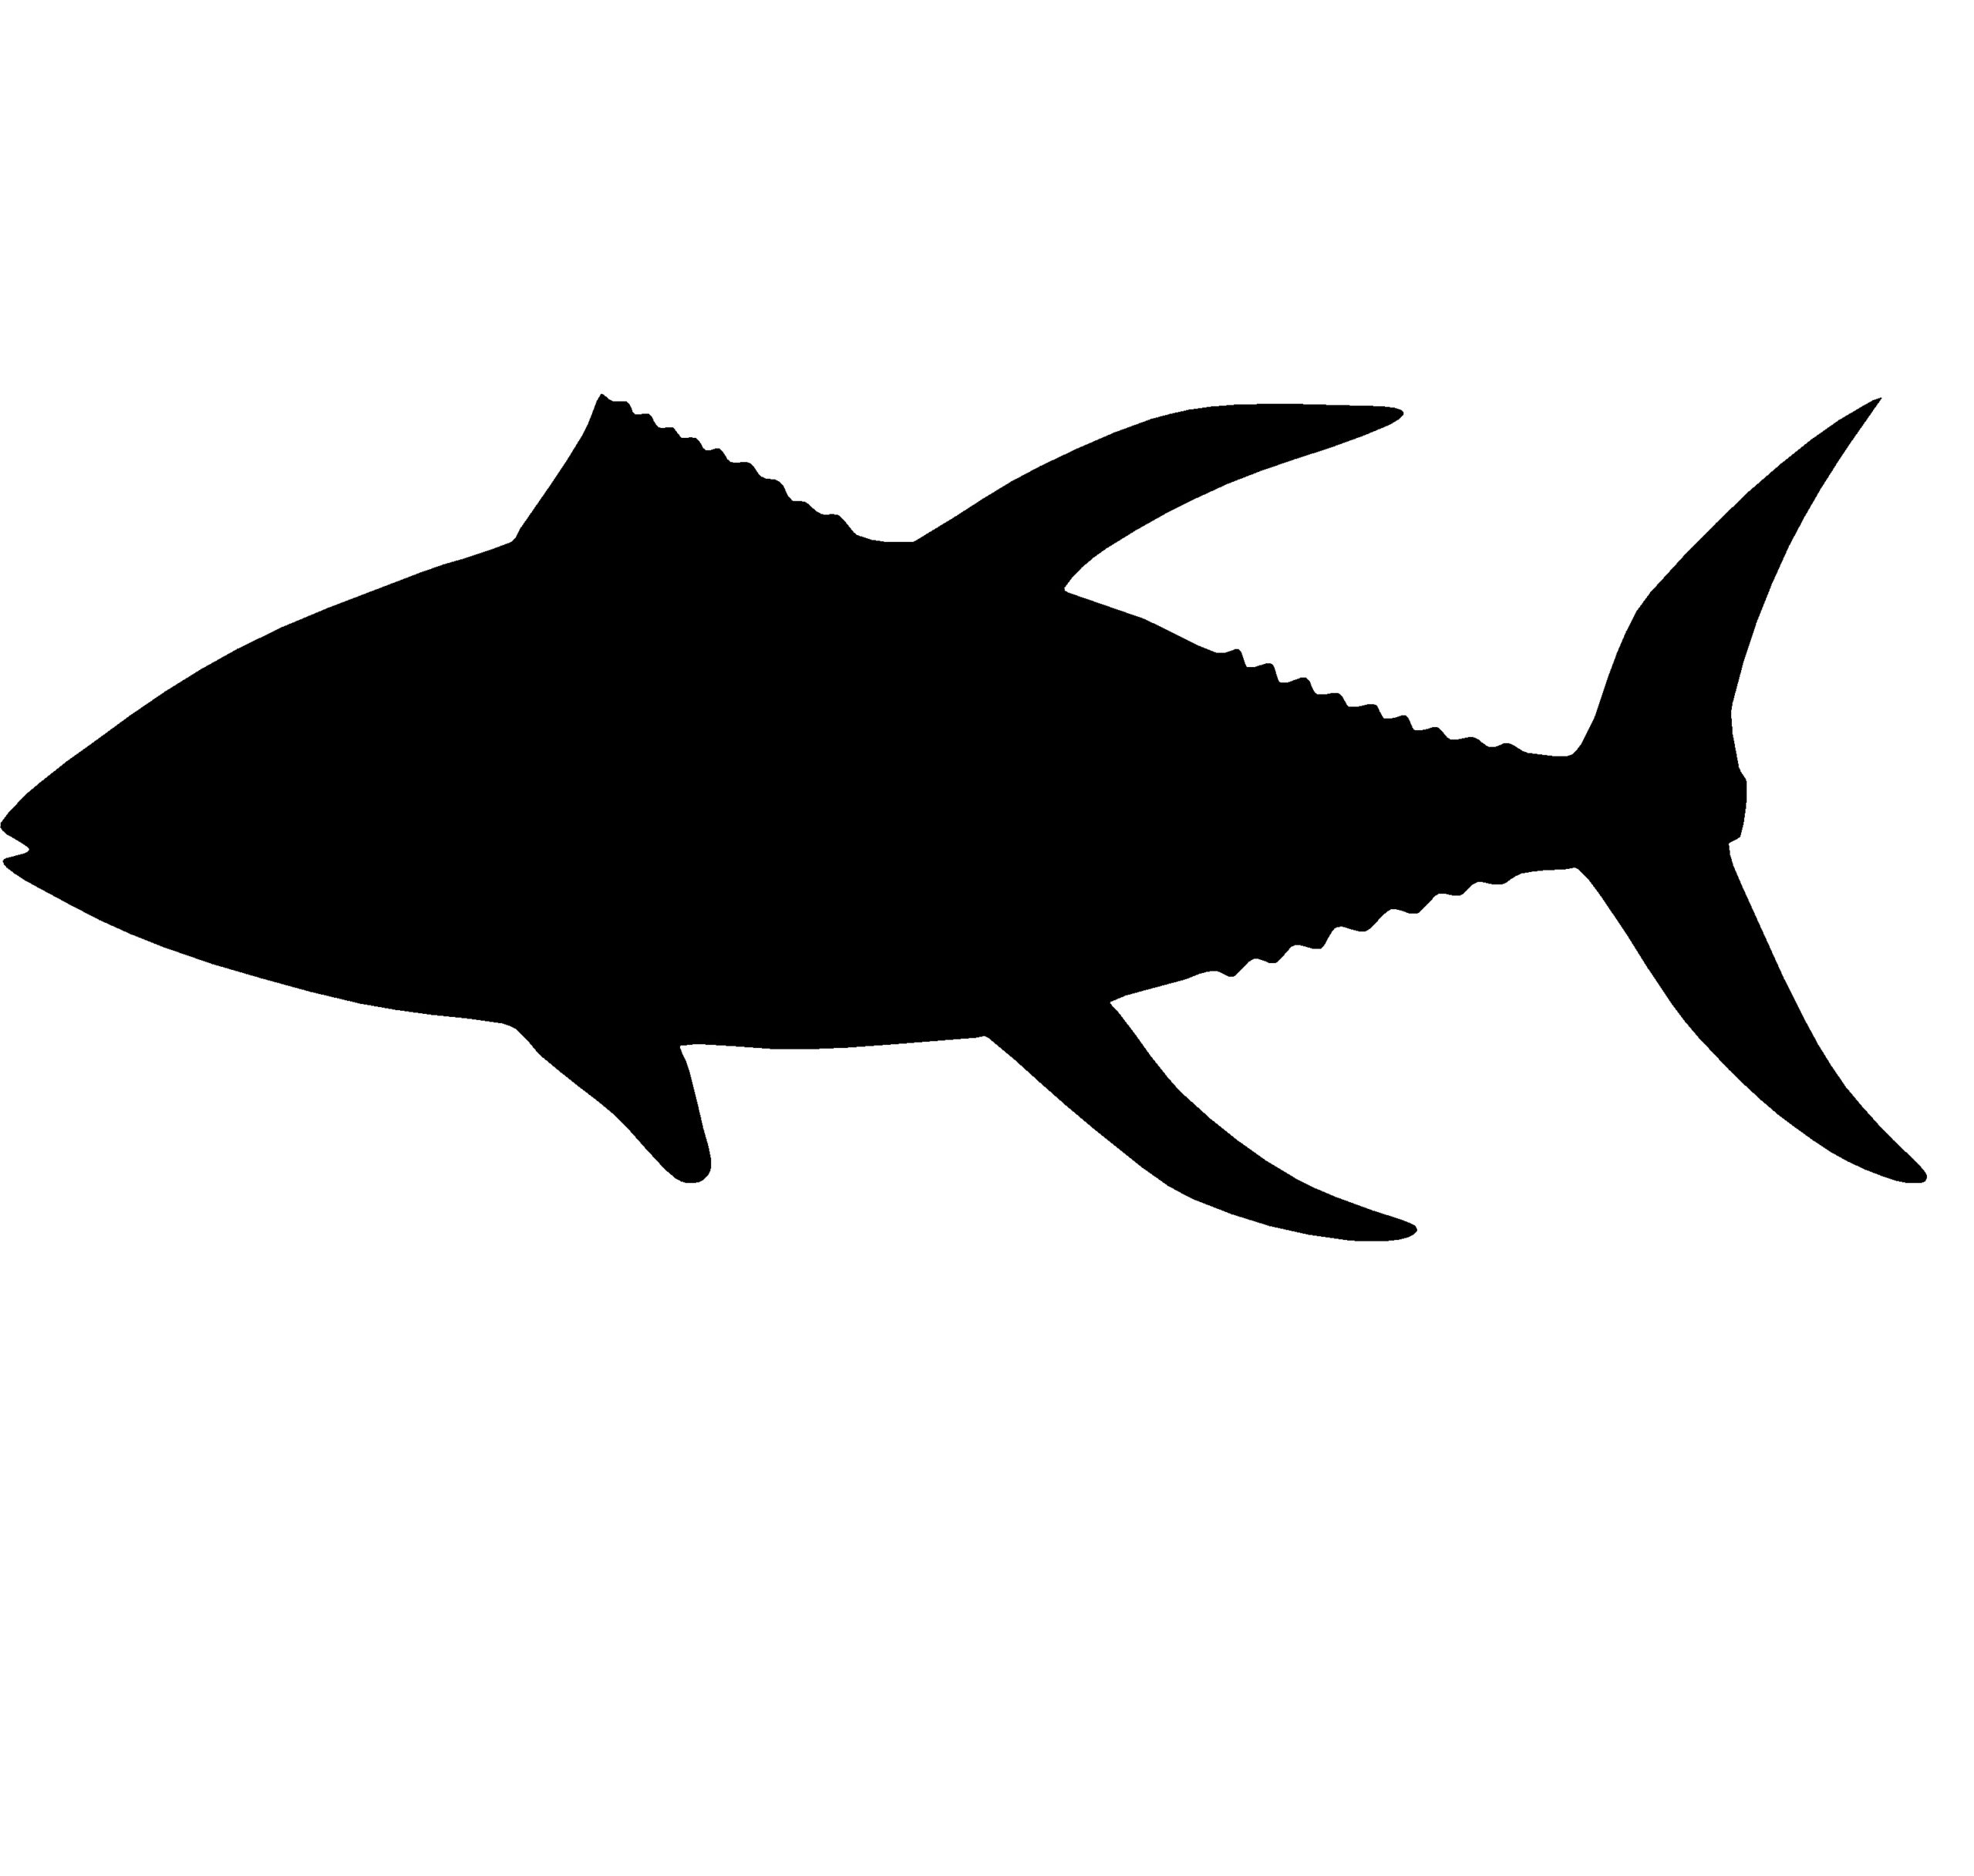 Tuna Fishing Decal – Tuna Fishing Window Sticker – 2203